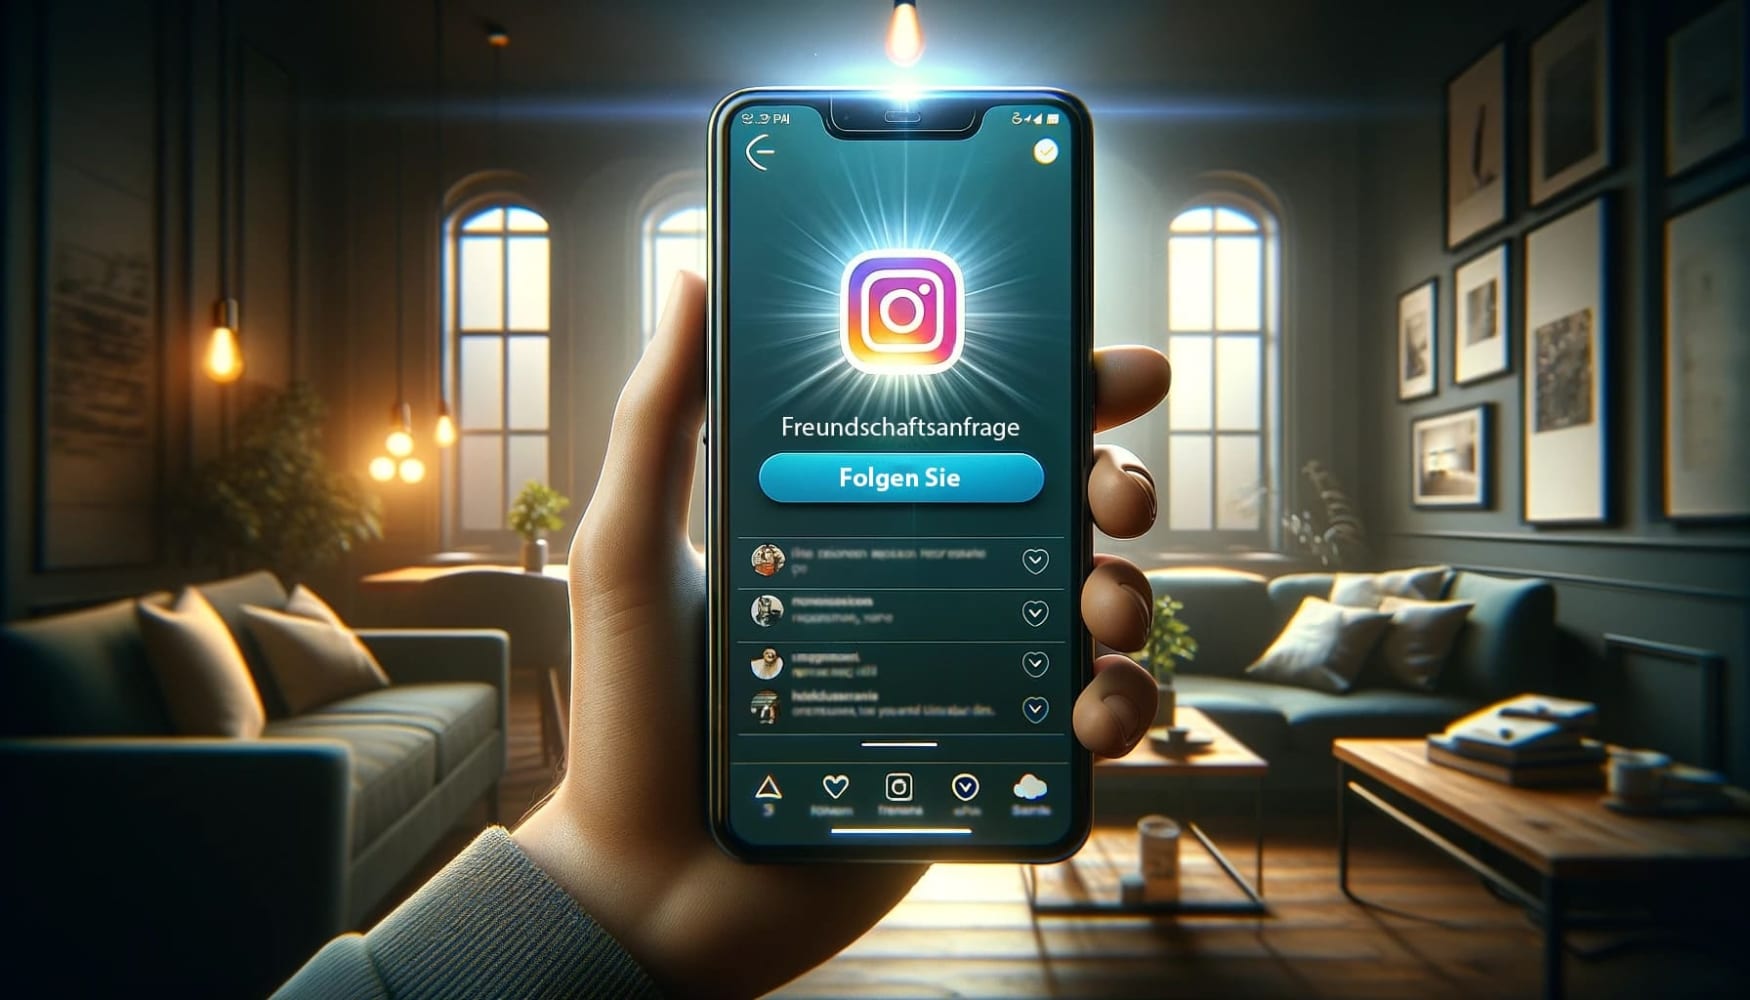 Die Illustration zeigt eine Hand, die ein Smartphone mit der Instagram-Oberfläche auf dem Bildschirm hält. Auf dem Bildschirm wird eine Benachrichtigung über eine Freundschaftsanfrage mit einer klaren, leuchtenden Schaltfläche "Folgen" angezeigt.